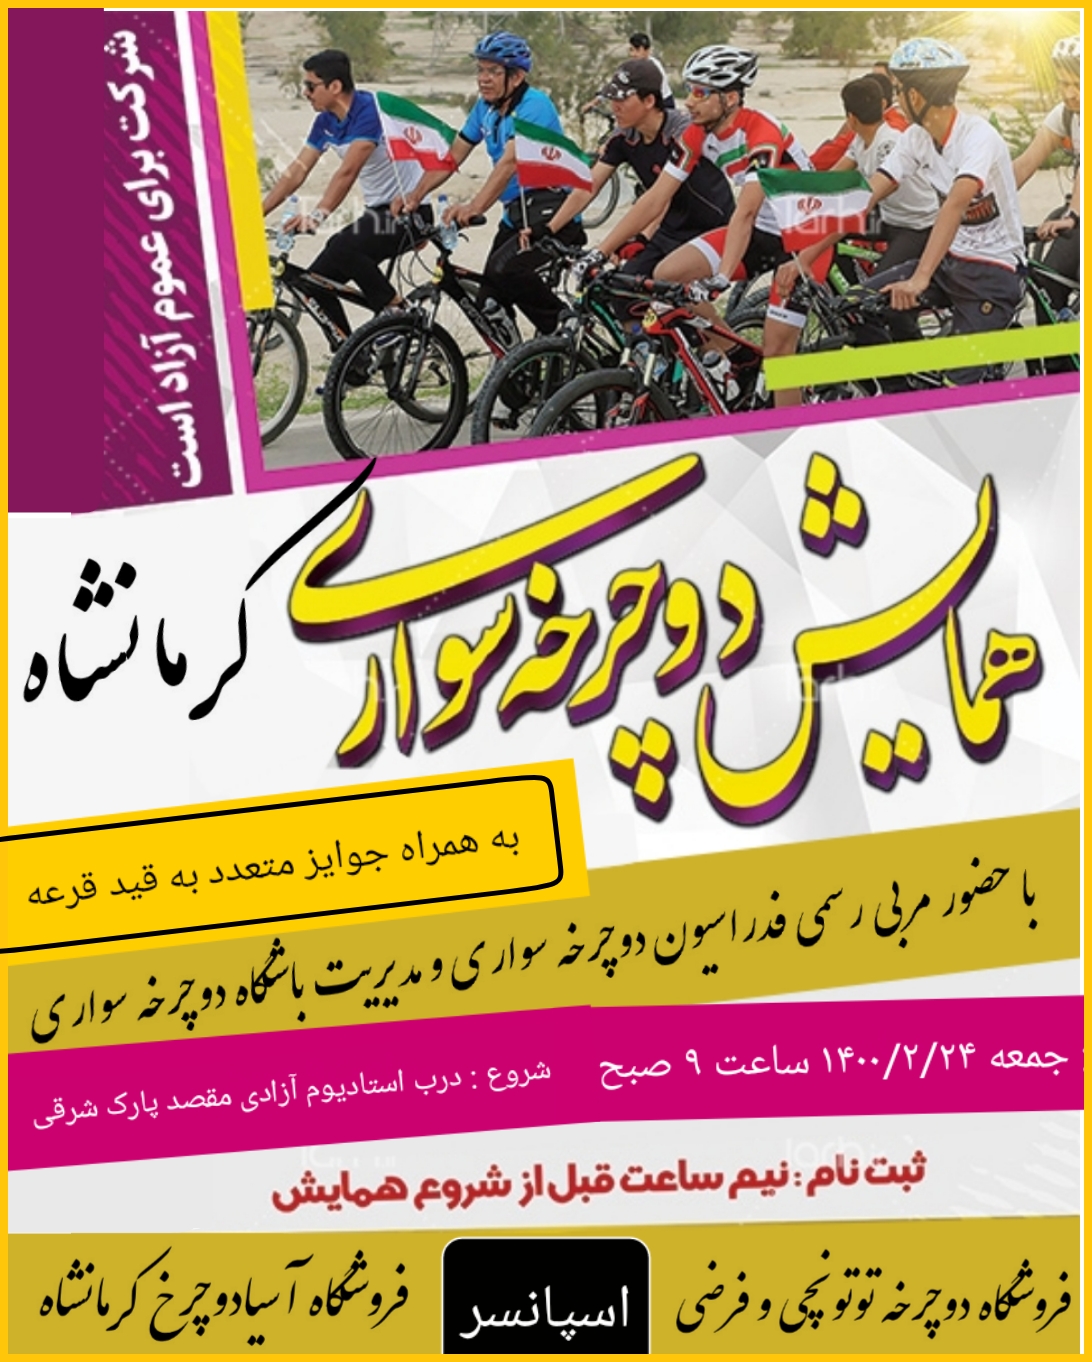 همایش بزرگ دوچرخه سواری به مناسب عید سعید فطر در باشگاه آسیادوچرخ کرمانشاه